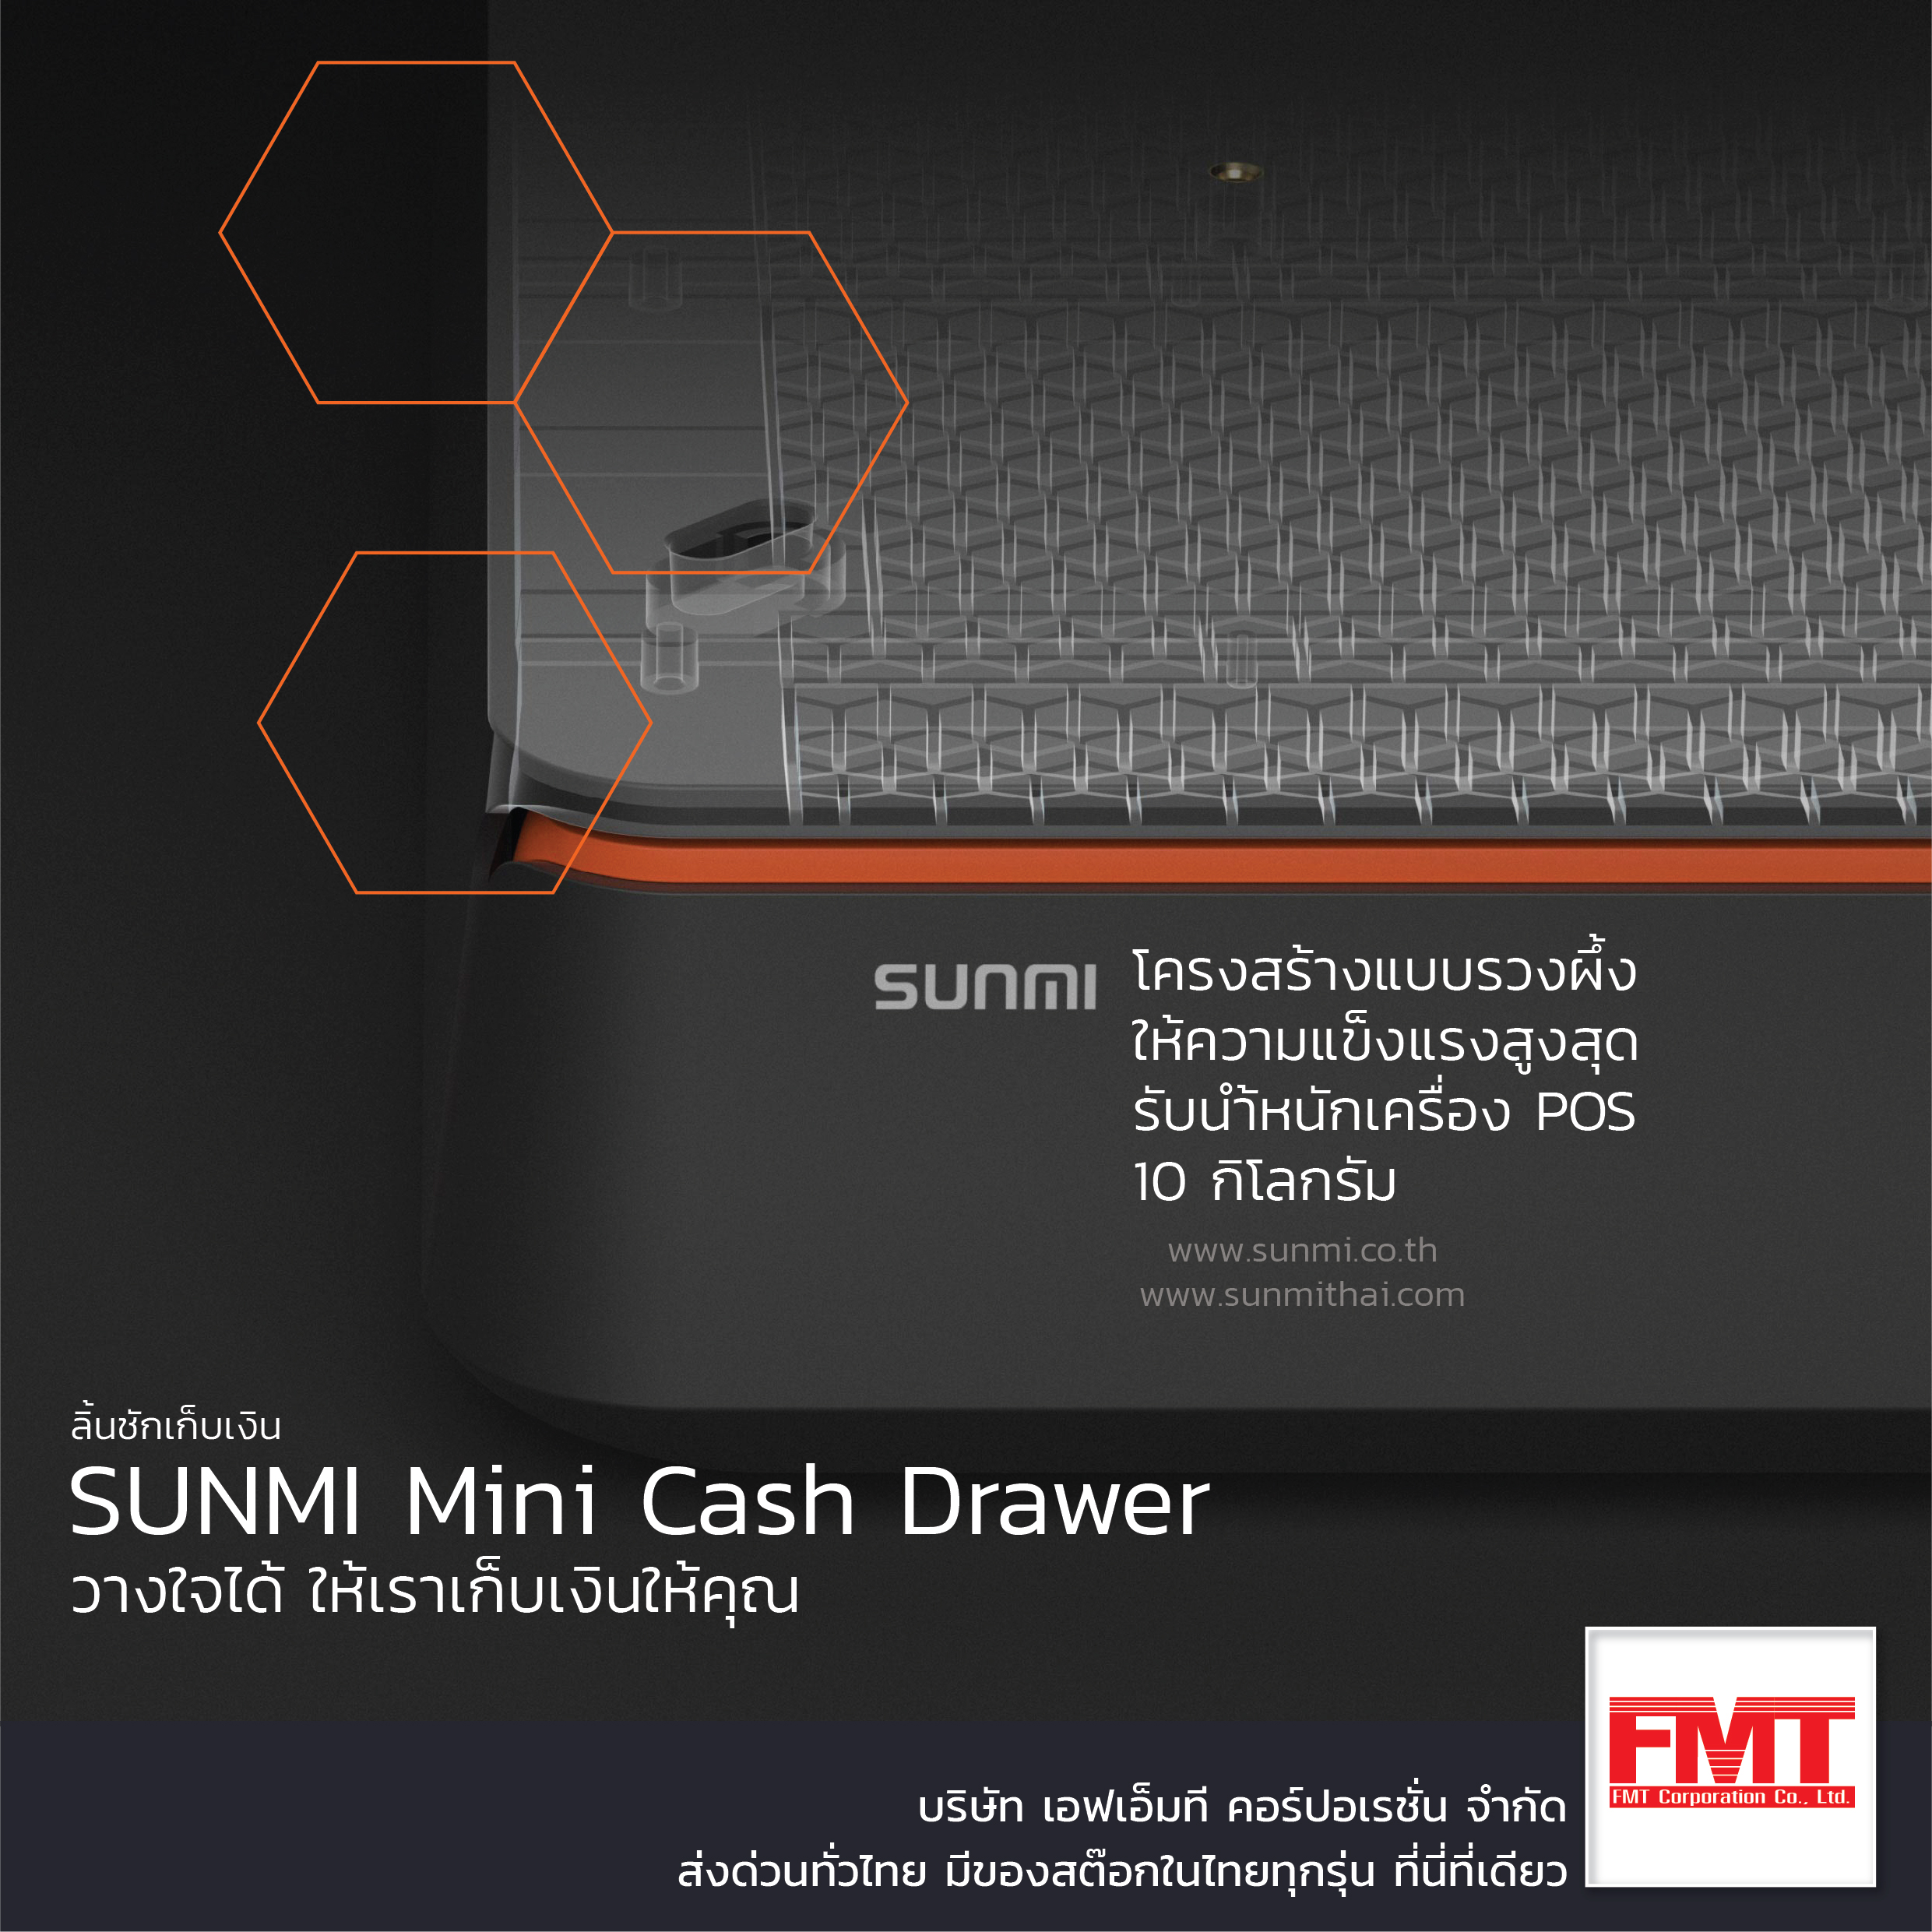 SUNMI Mini Cash Drawer